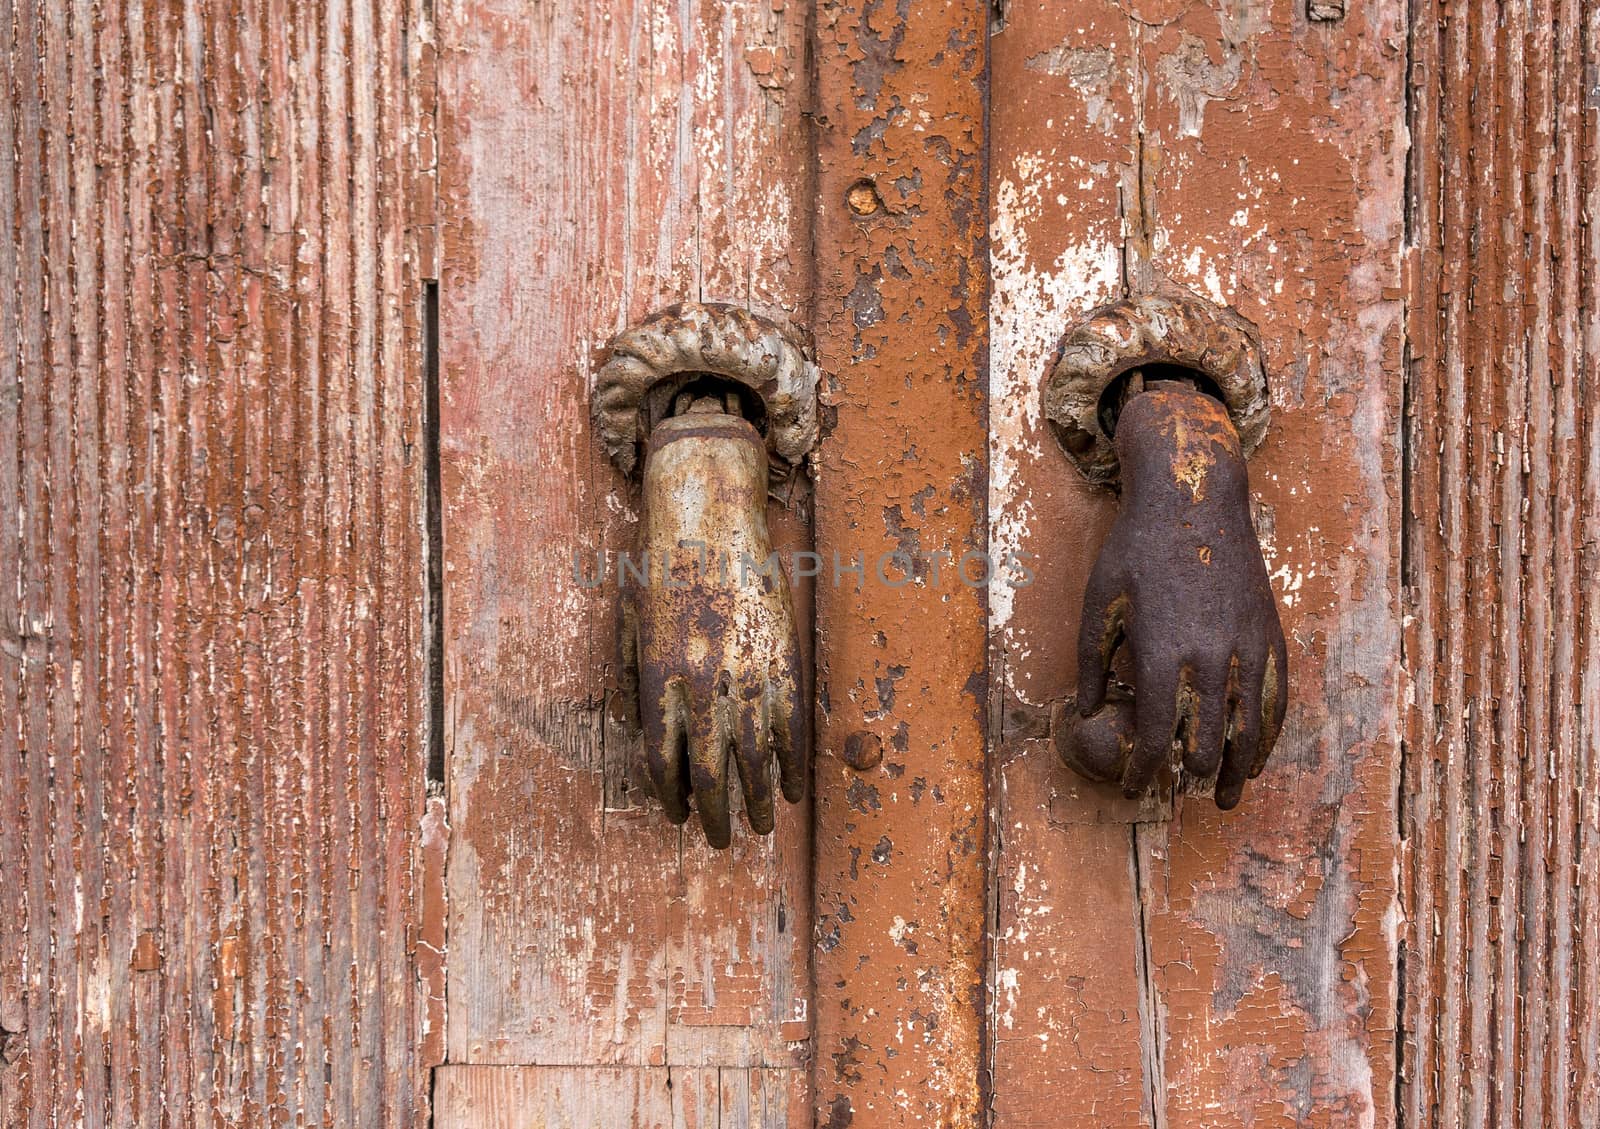 Old bronze knocker on a wooden door